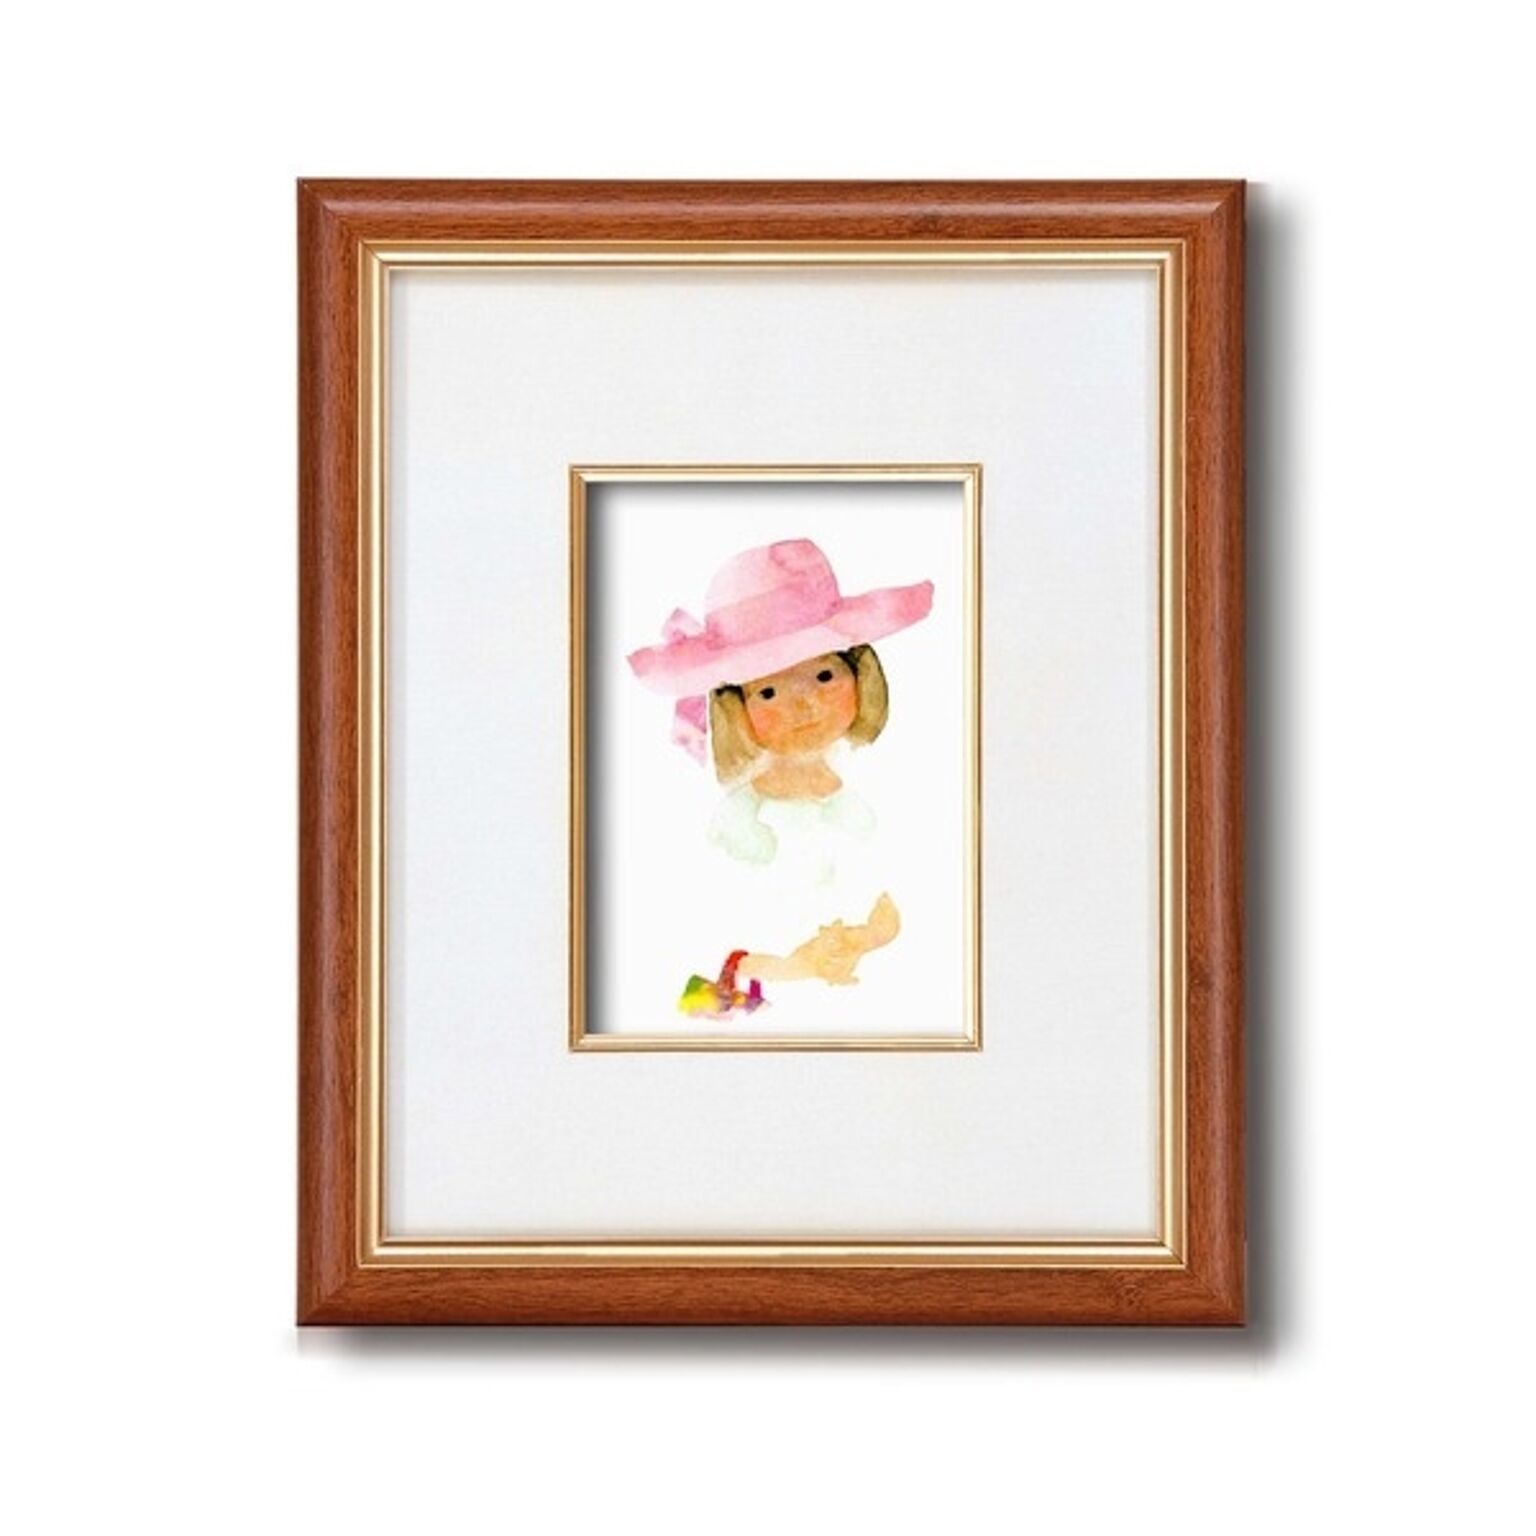 額縁/フレーム 【インチ判 タテ】 いわさきちひろ 「ピンクの帽子」 スタンド付き 壁掛け可 日本製